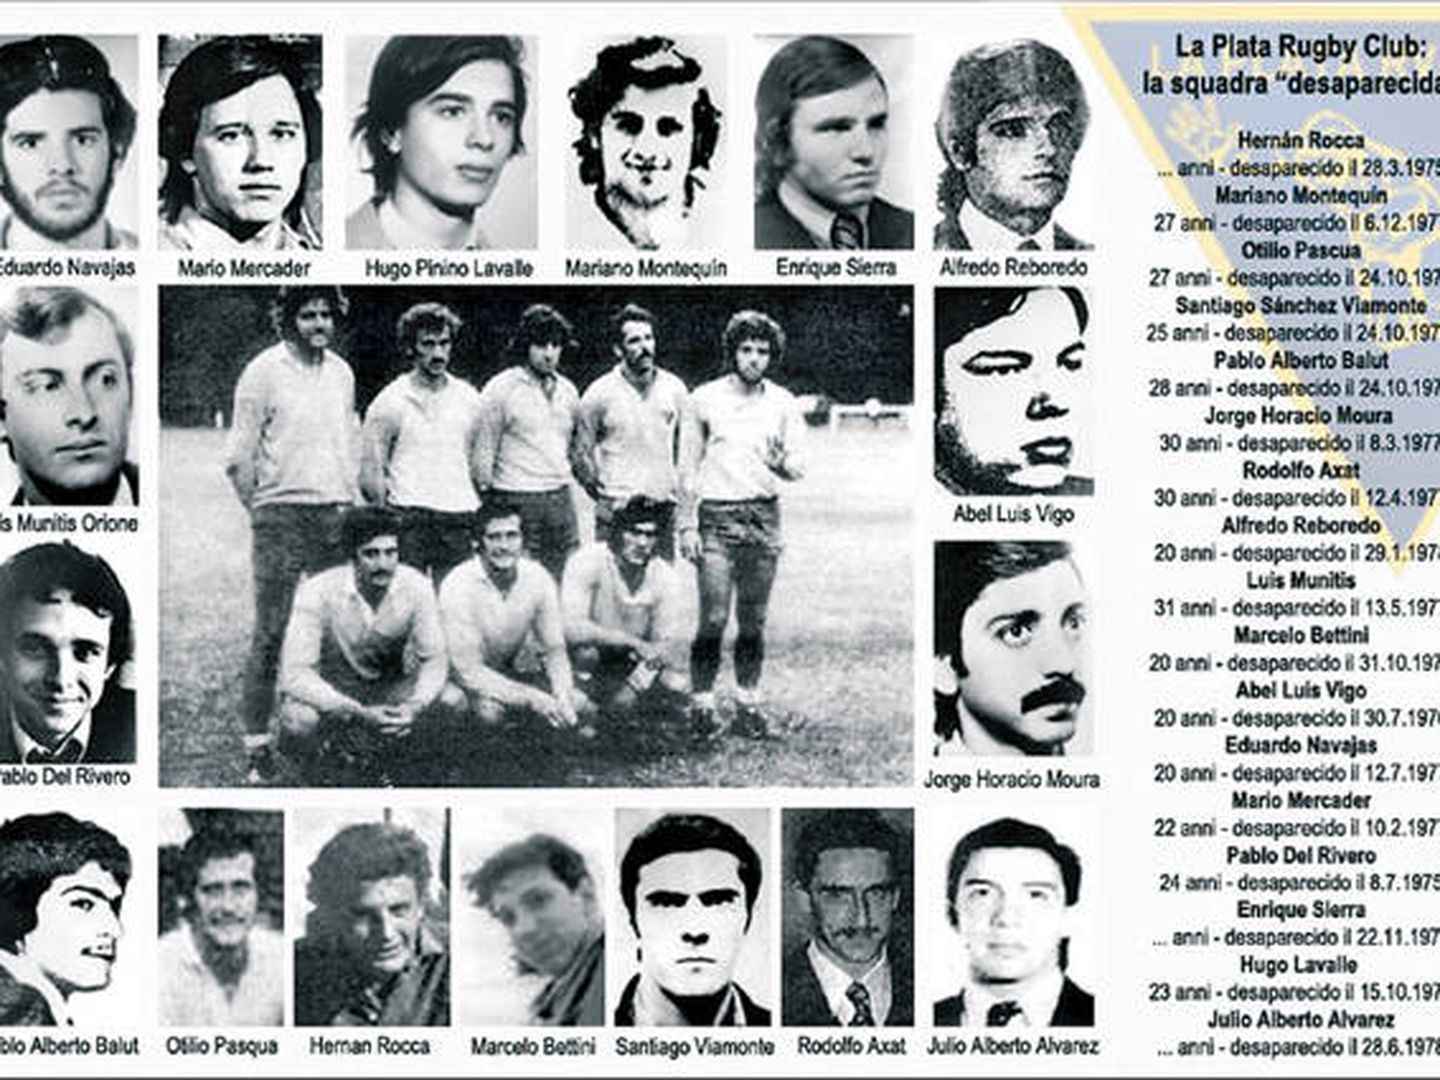 Imagen de desaparecidos del La Plata R.C. durante la dictadura argentina.